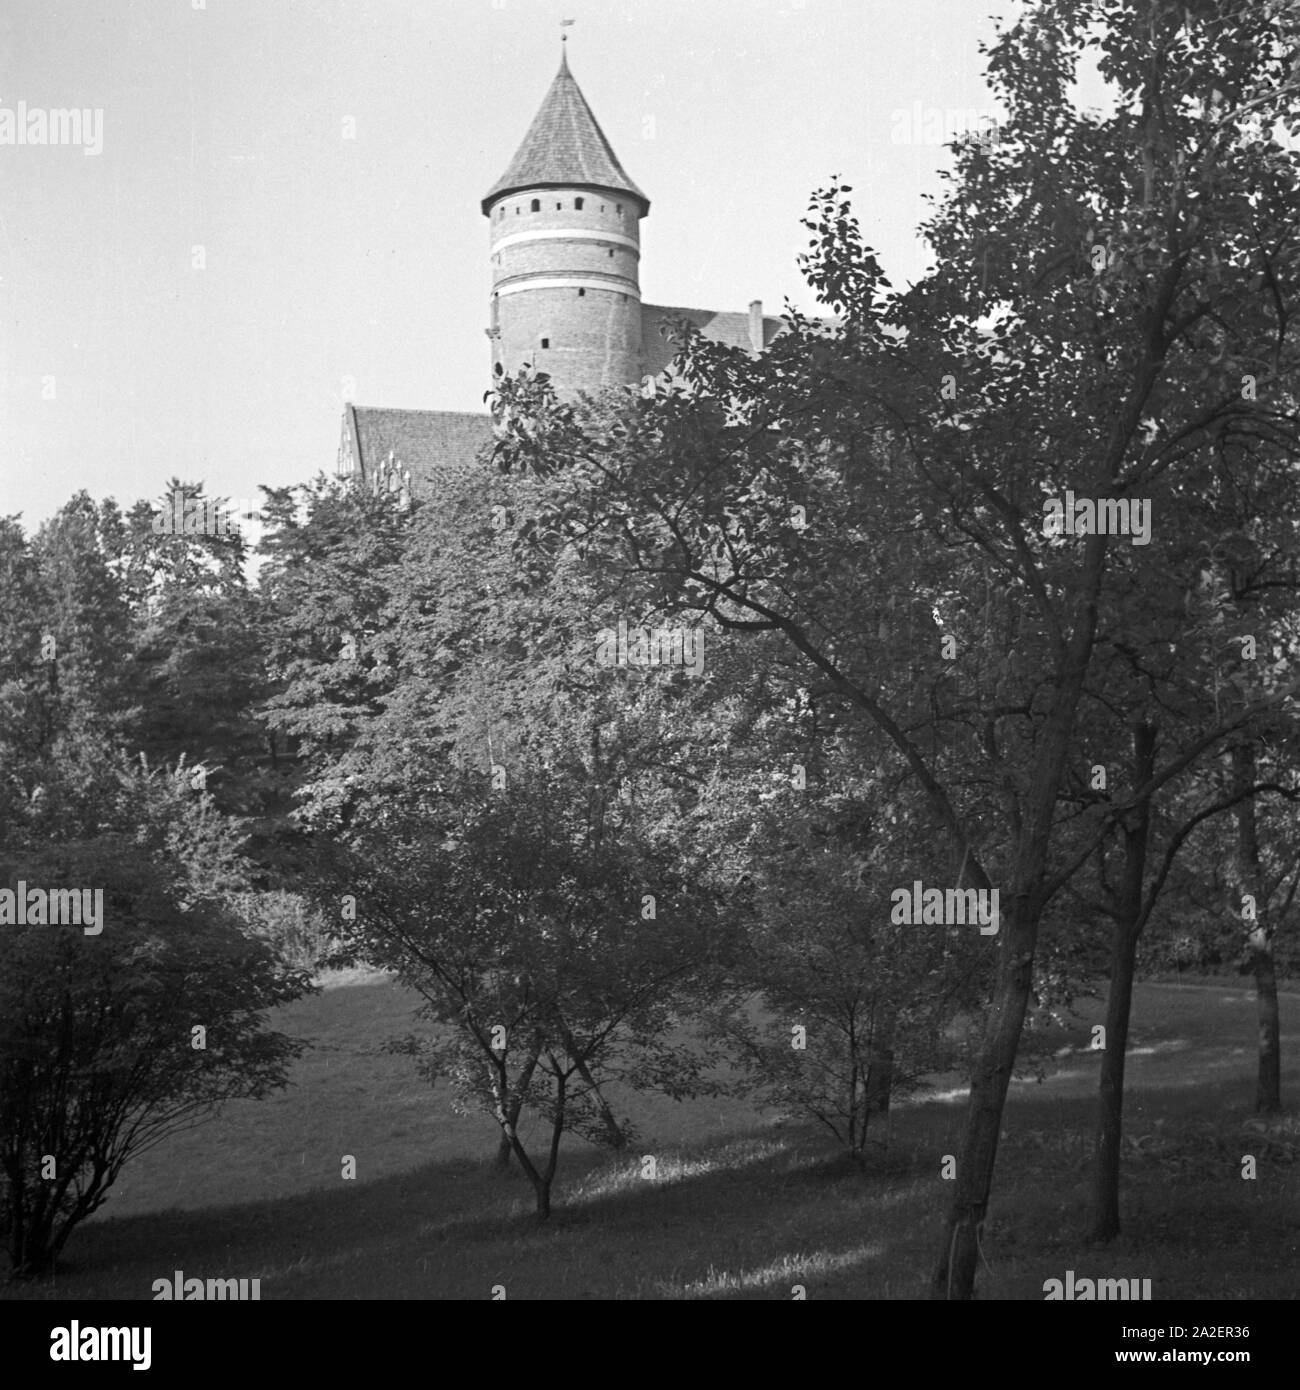 Das Schloss in Allenstein in Ostpreußen, Deutschland 1930er Jahre. Allenstein castle in East Prussia, Germany 1930s. Stock Photo